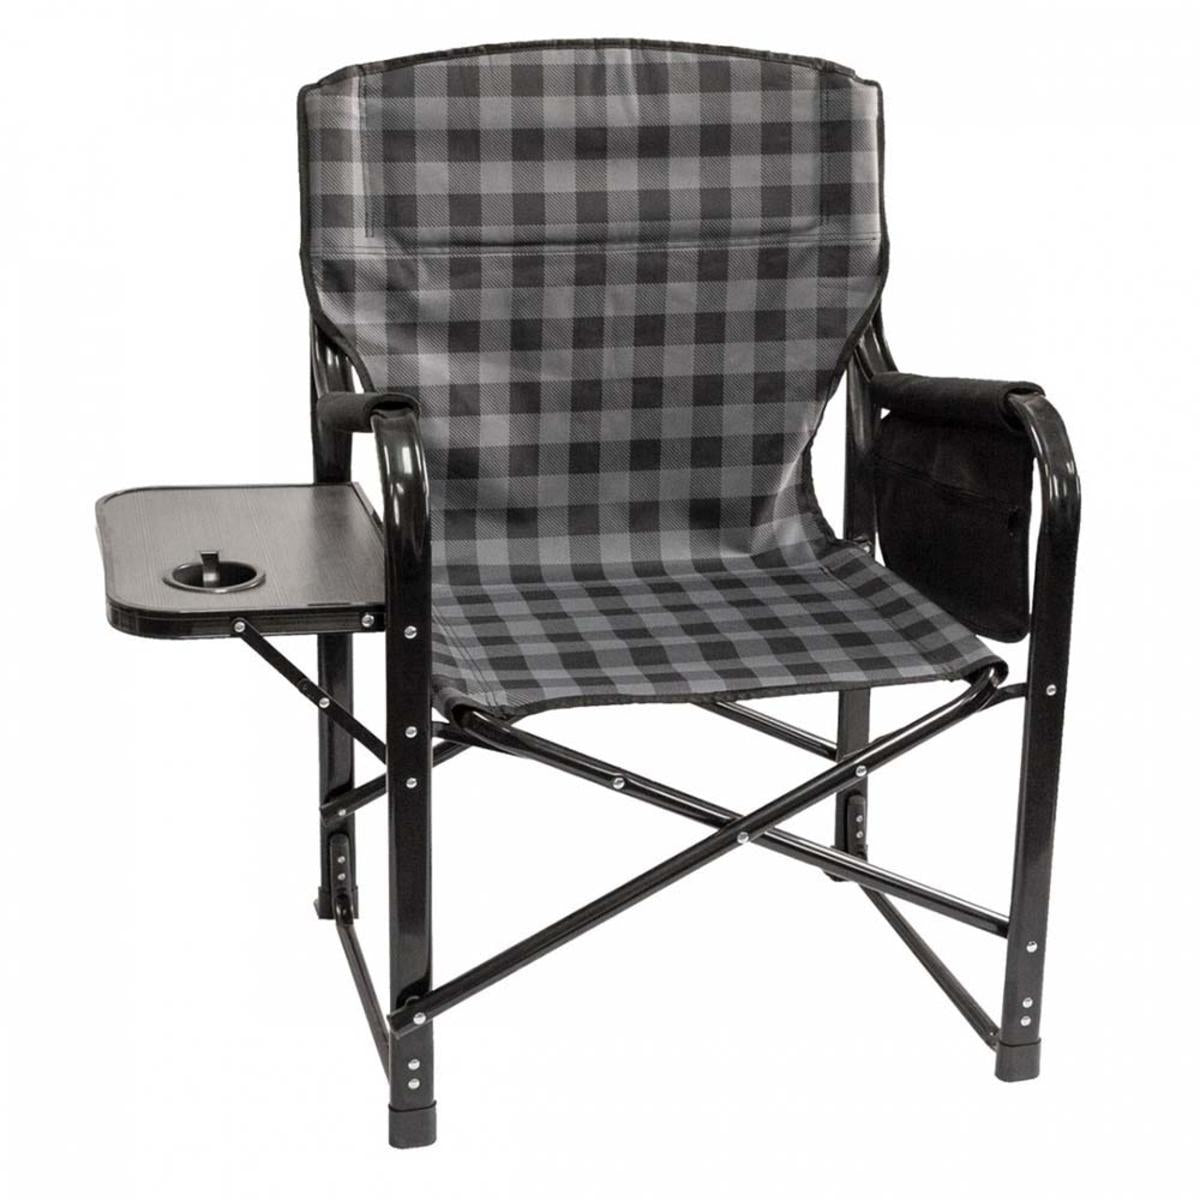 KUMA Outdoor Gear Bear Paws Chair with Side Table